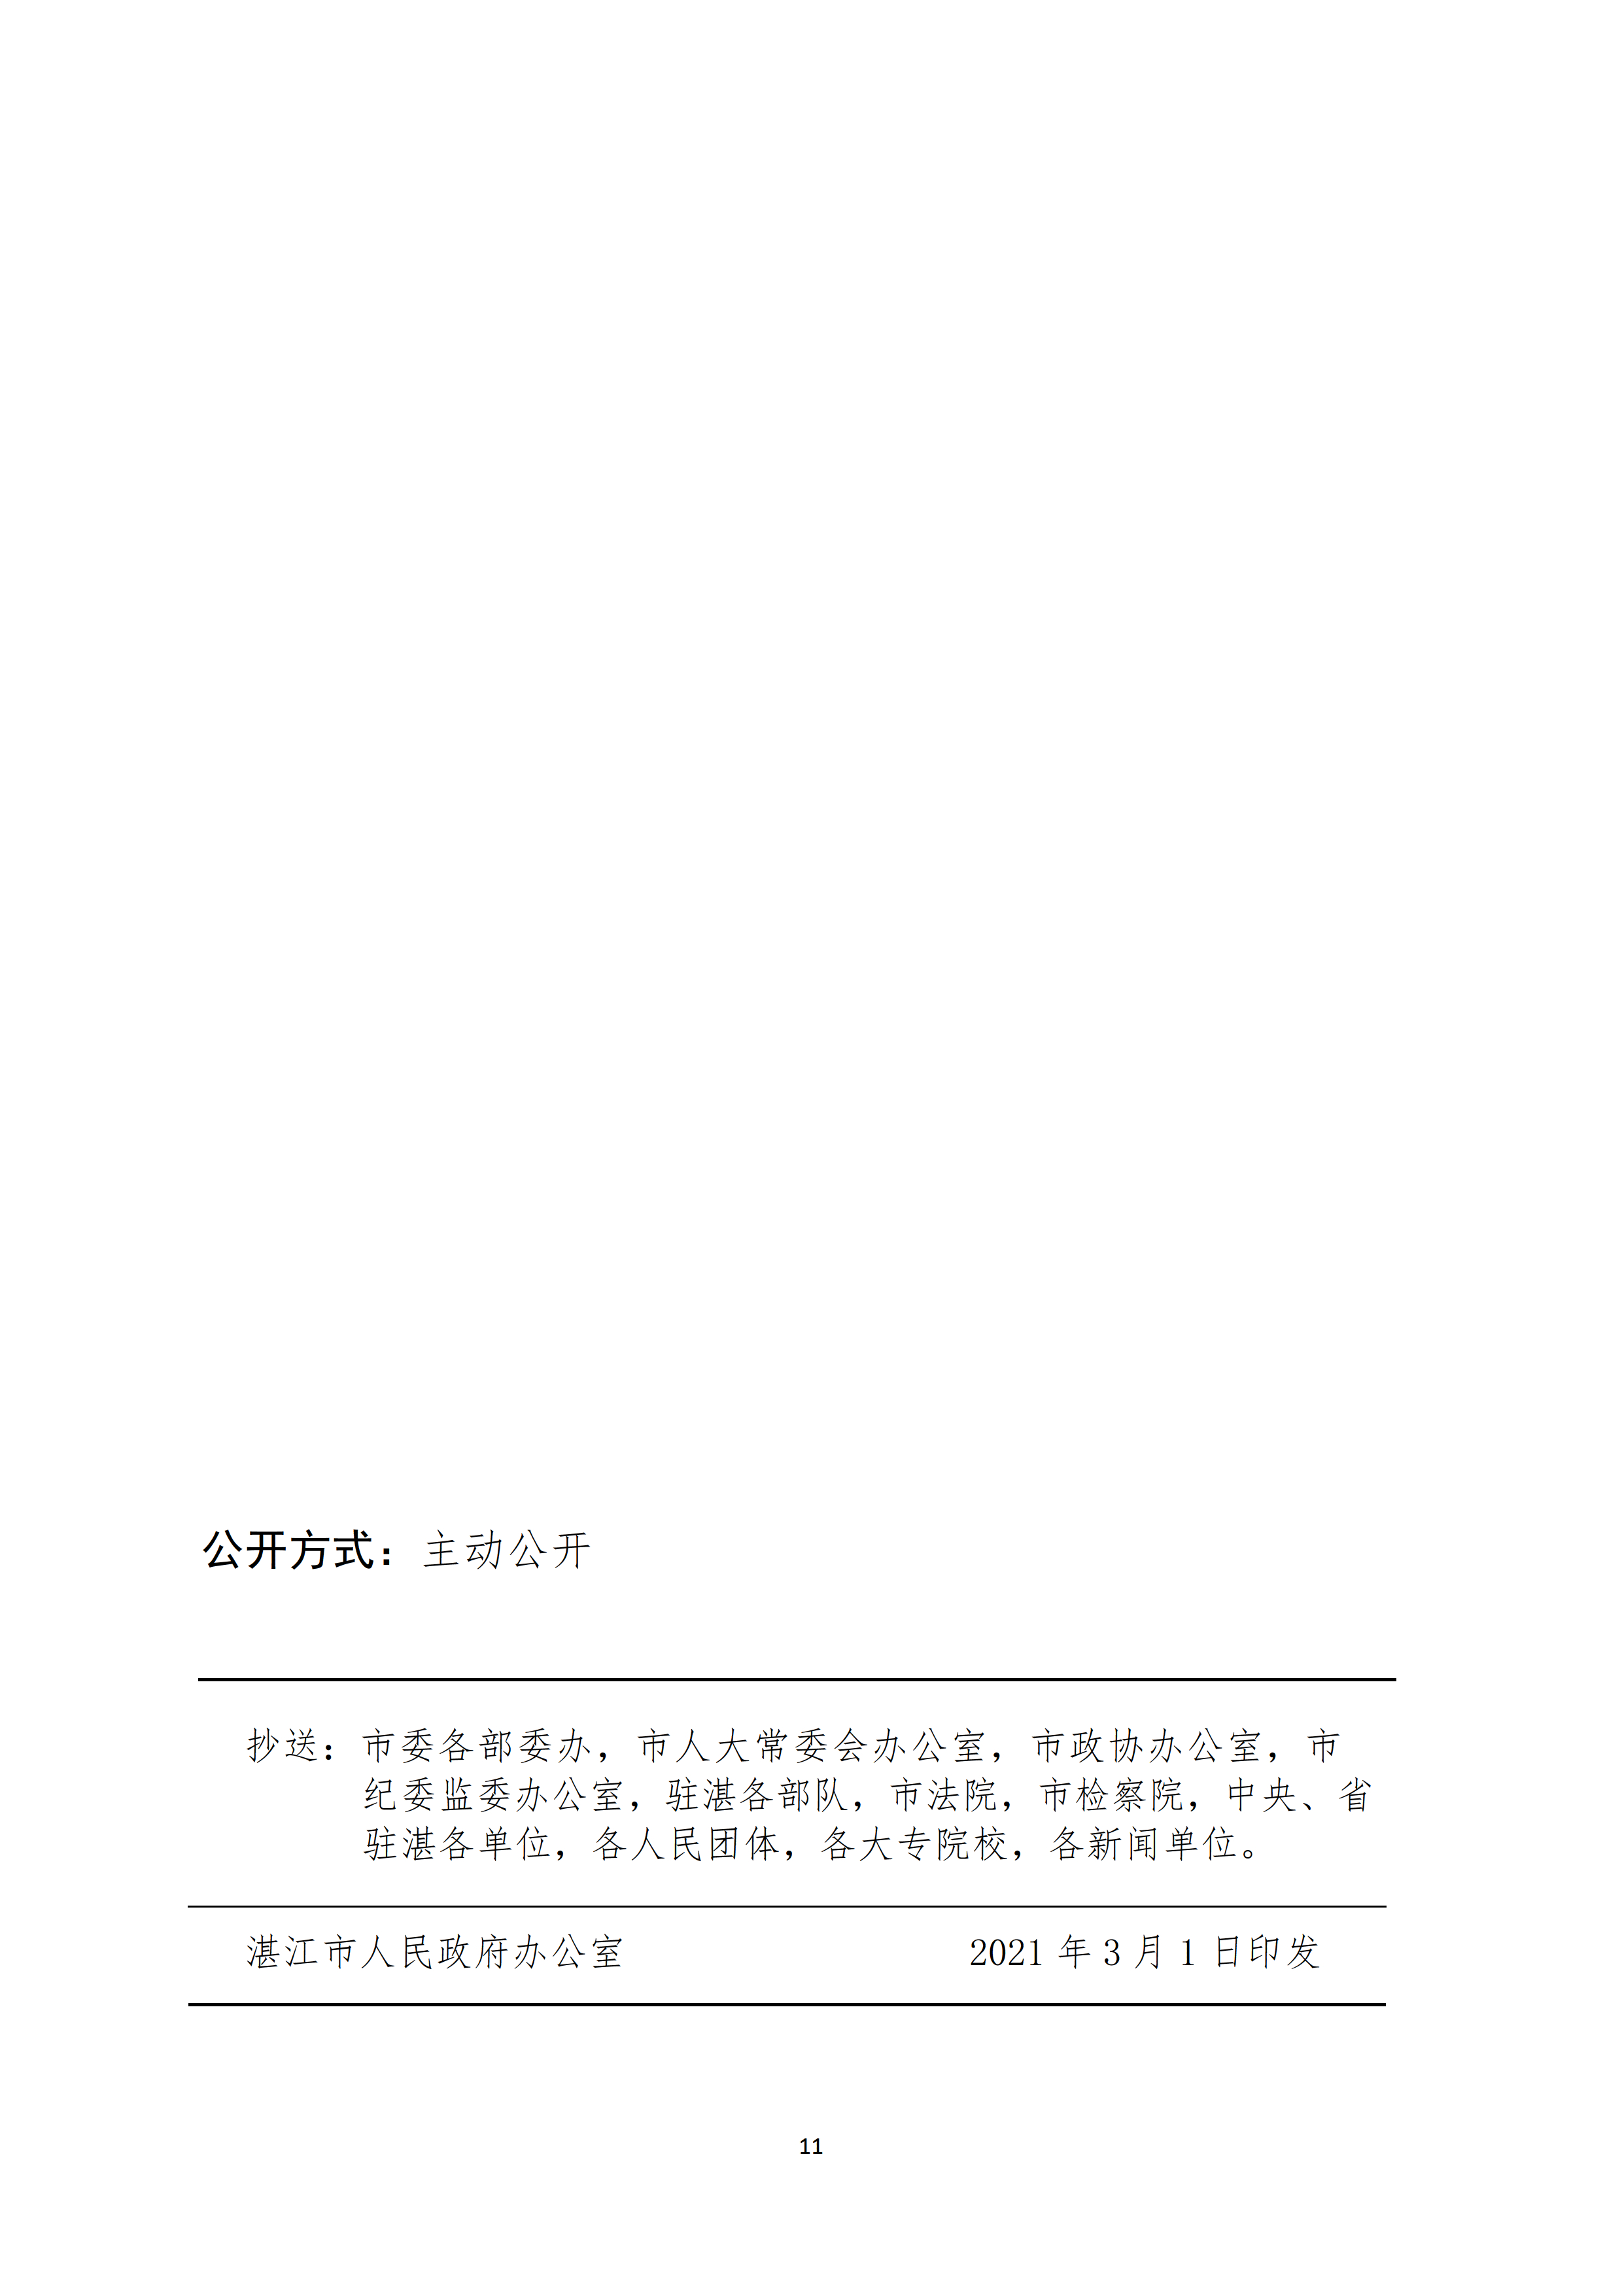 湛江市人民政府关于印发湛江市实施标准化战略意见（2021—2025年）的通知 - 0011.tif.jpg